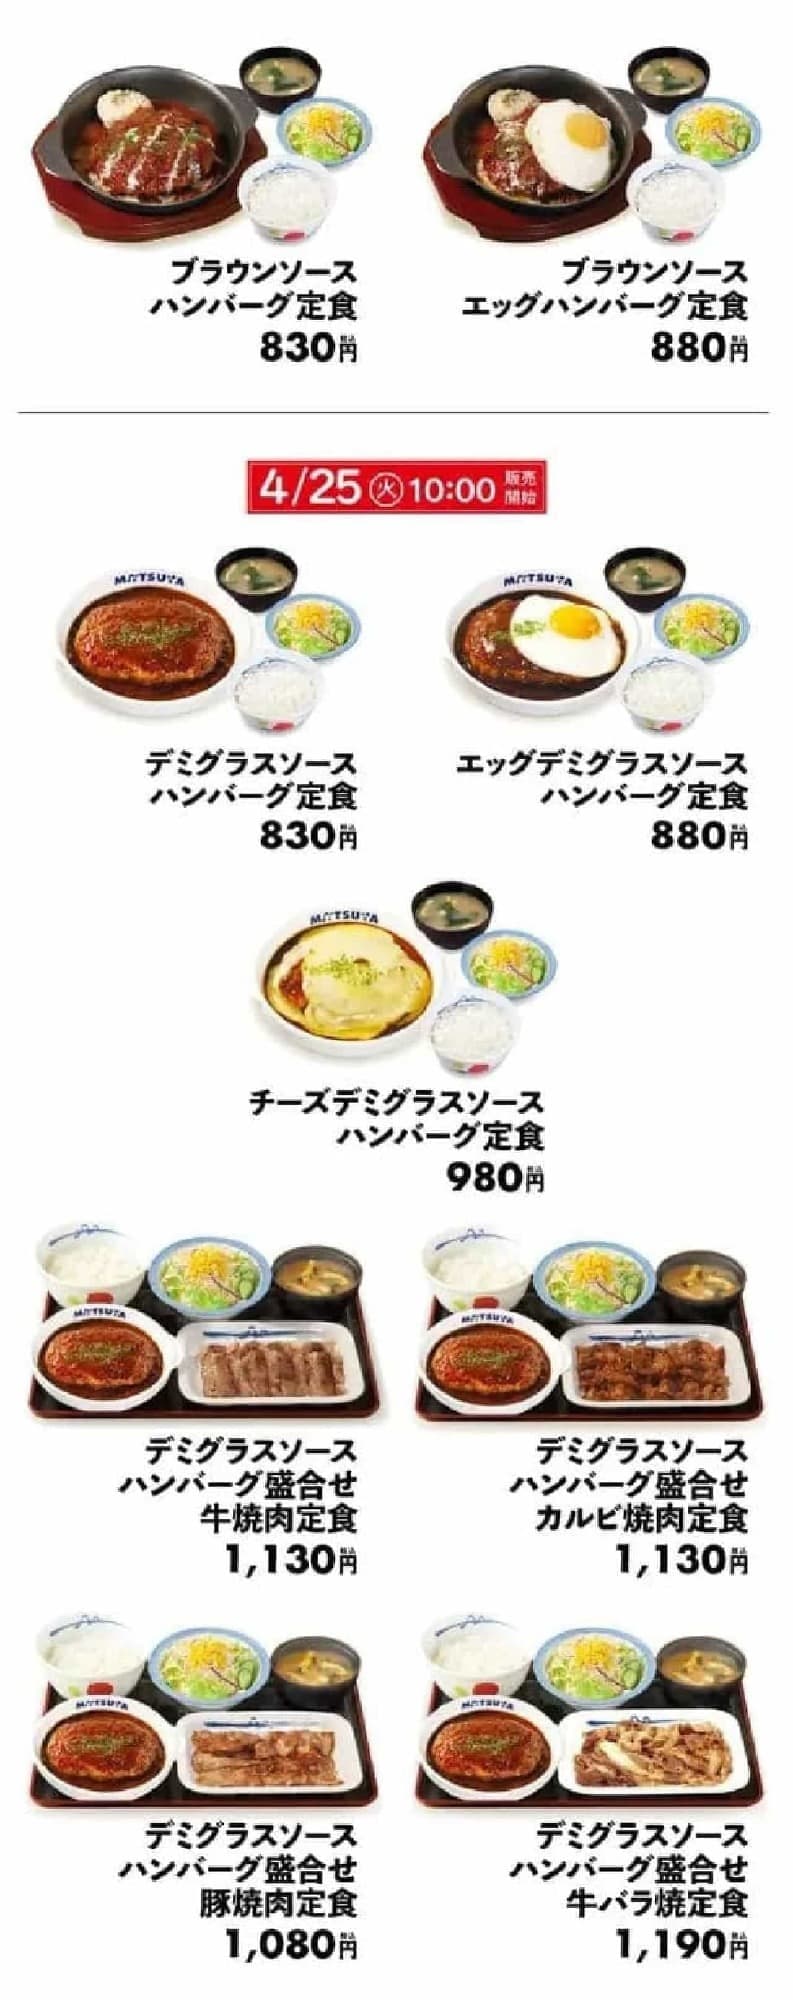 Matsuya "Hamburger steak set meal with demi-glace sauce